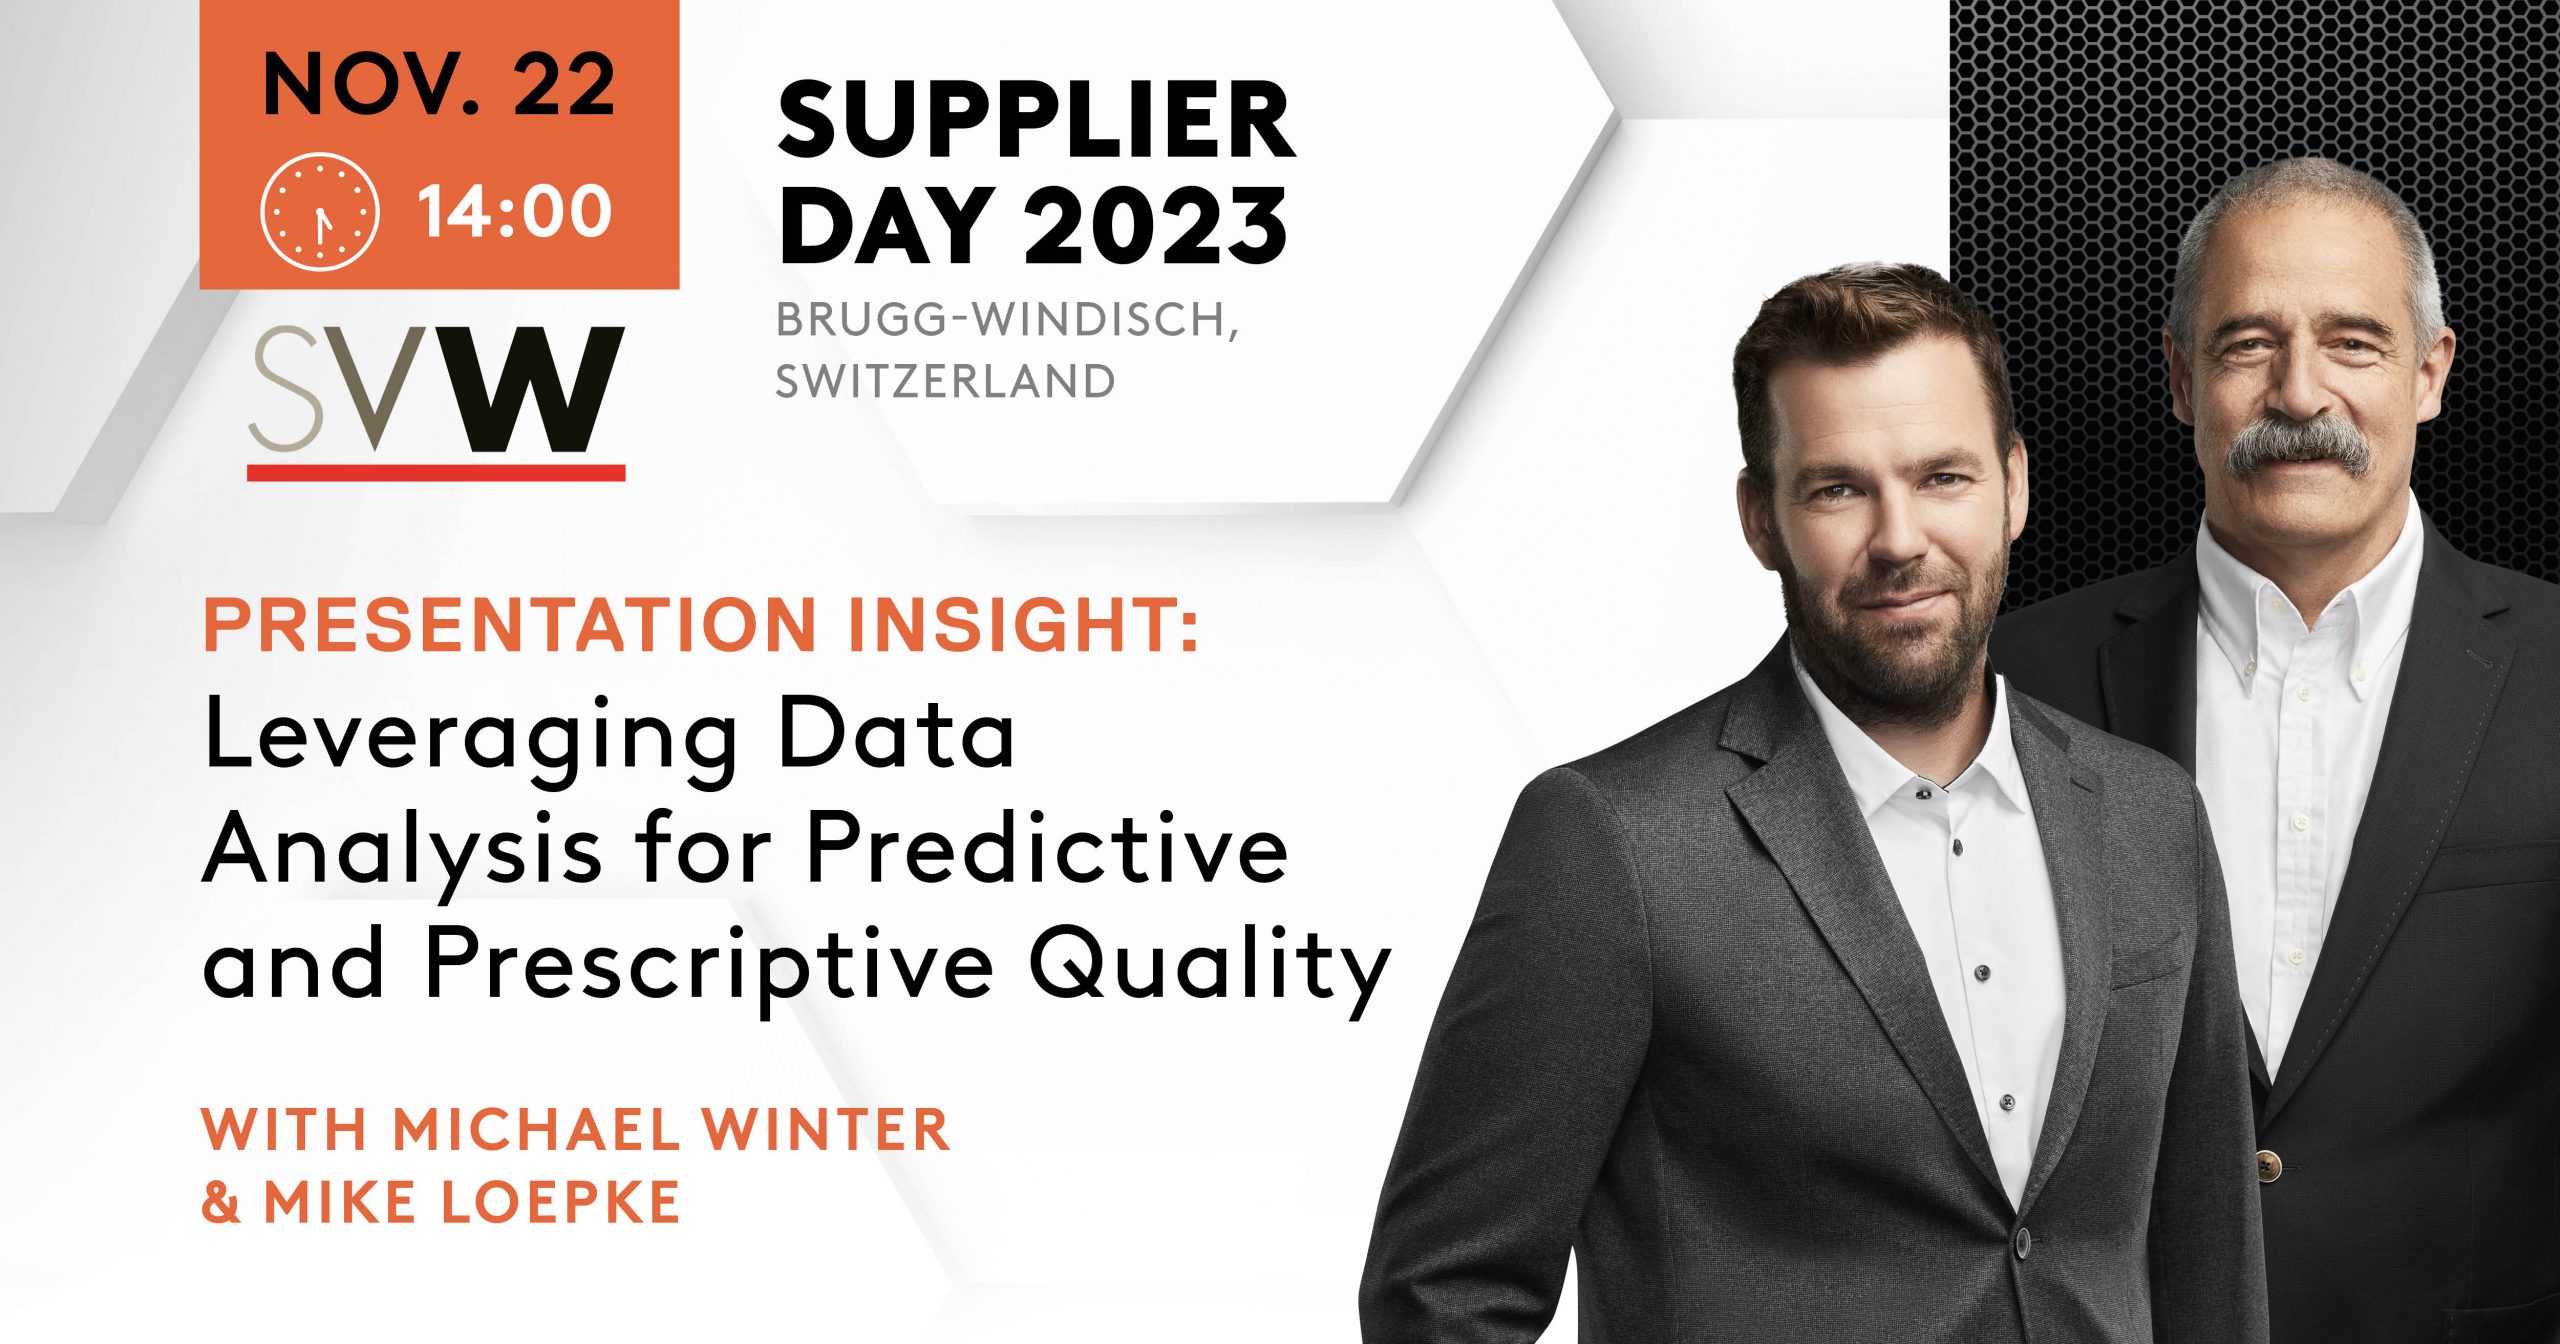 Digitalization: Predictive & Prescriptive Quality at SVW Supplier Day 2023